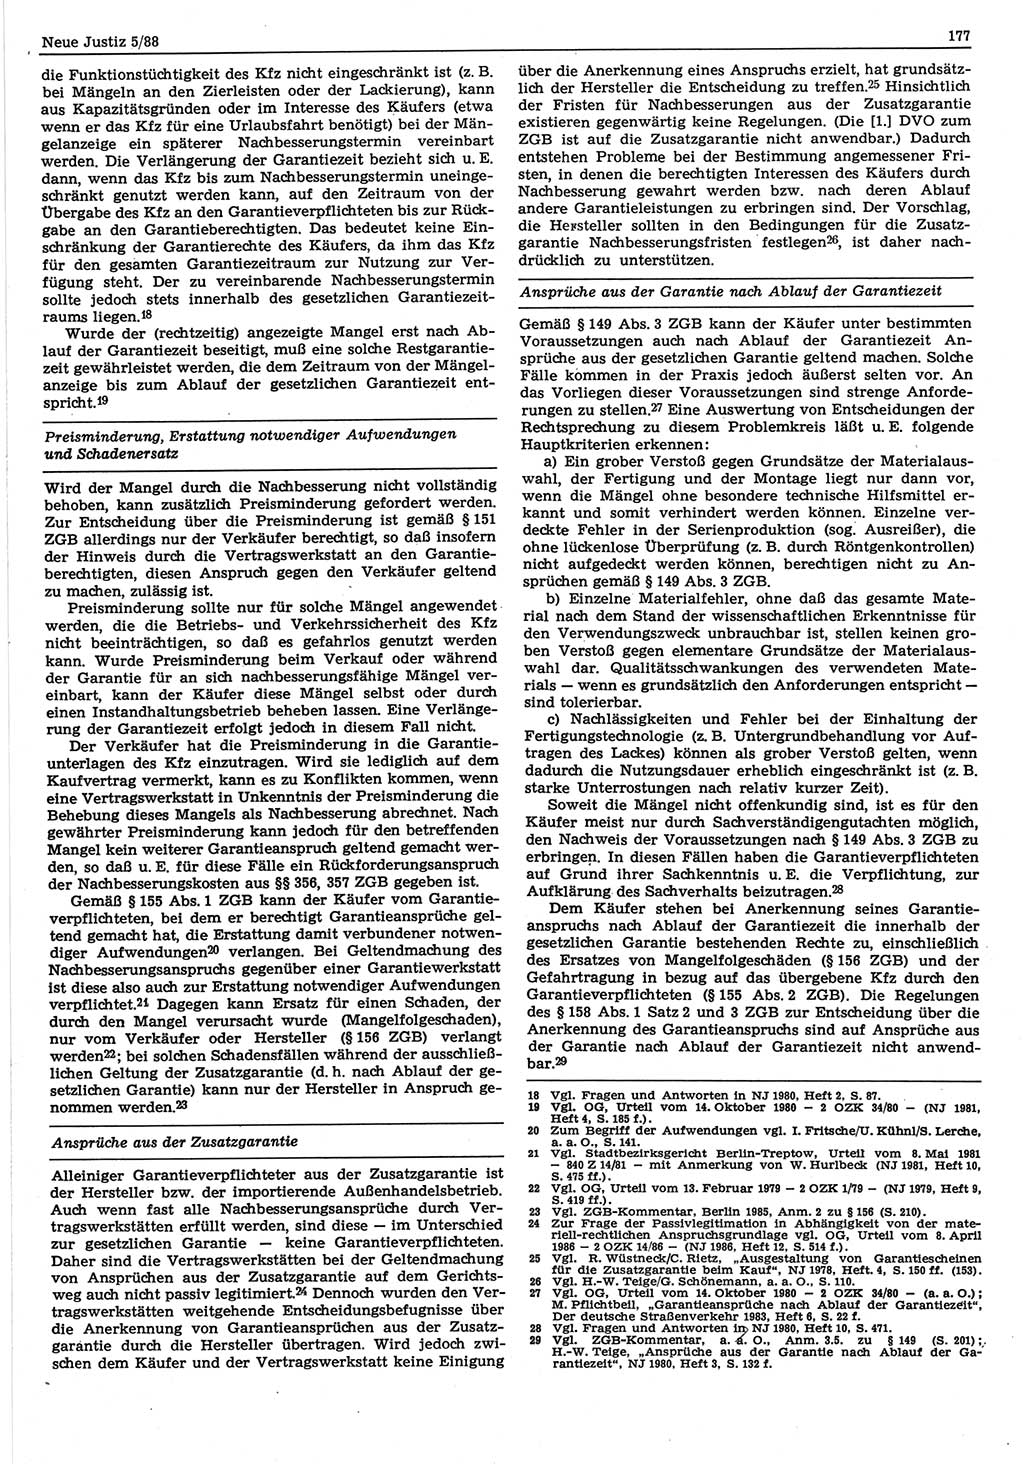 Neue Justiz (NJ), Zeitschrift für sozialistisches Recht und Gesetzlichkeit [Deutsche Demokratische Republik (DDR)], 42. Jahrgang 1988, Seite 177 (NJ DDR 1988, S. 177)